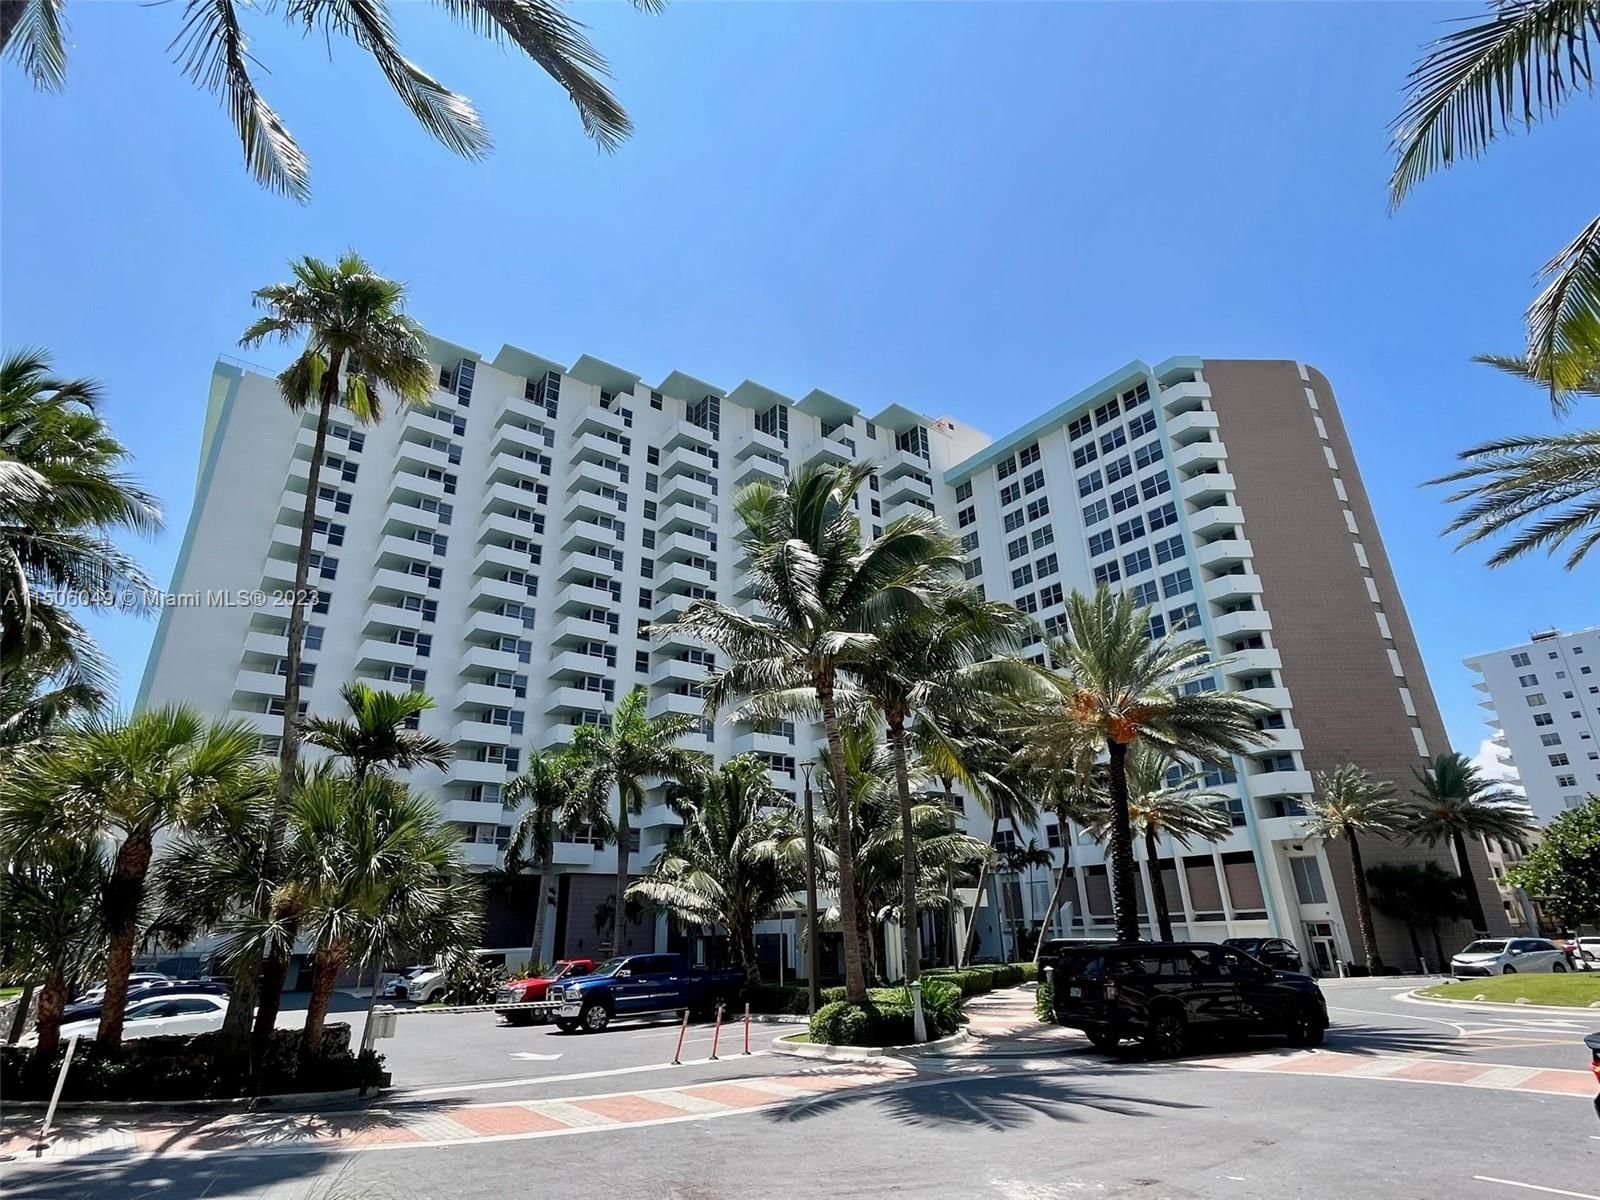 Real estate property located at 2899 Collins Ave #904, Miami-Dade County, TRITON TOWER CONDO, Miami Beach, FL